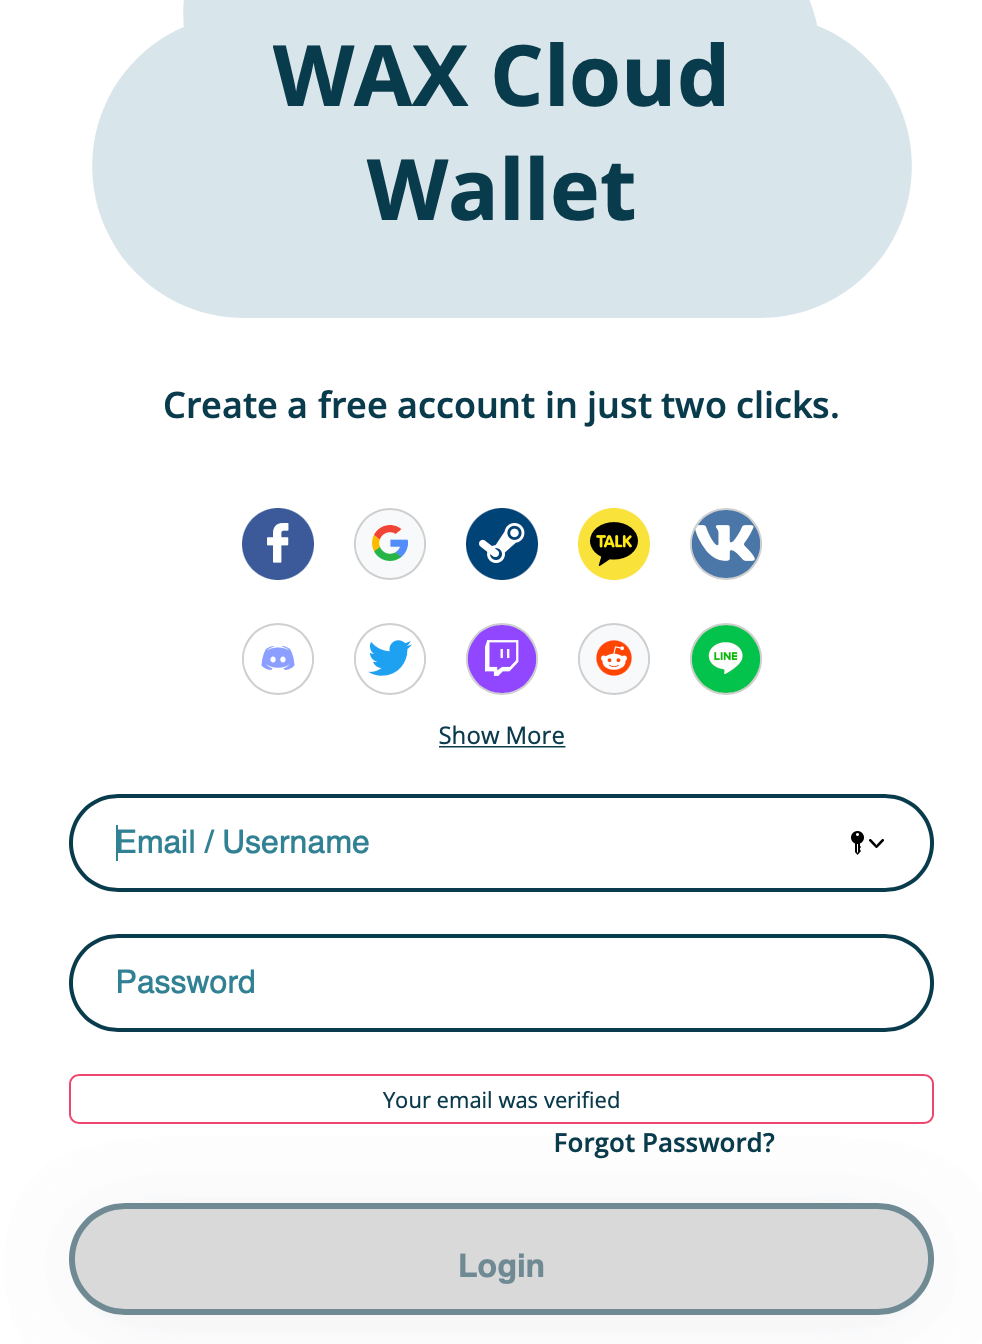 wax wallet login - 07